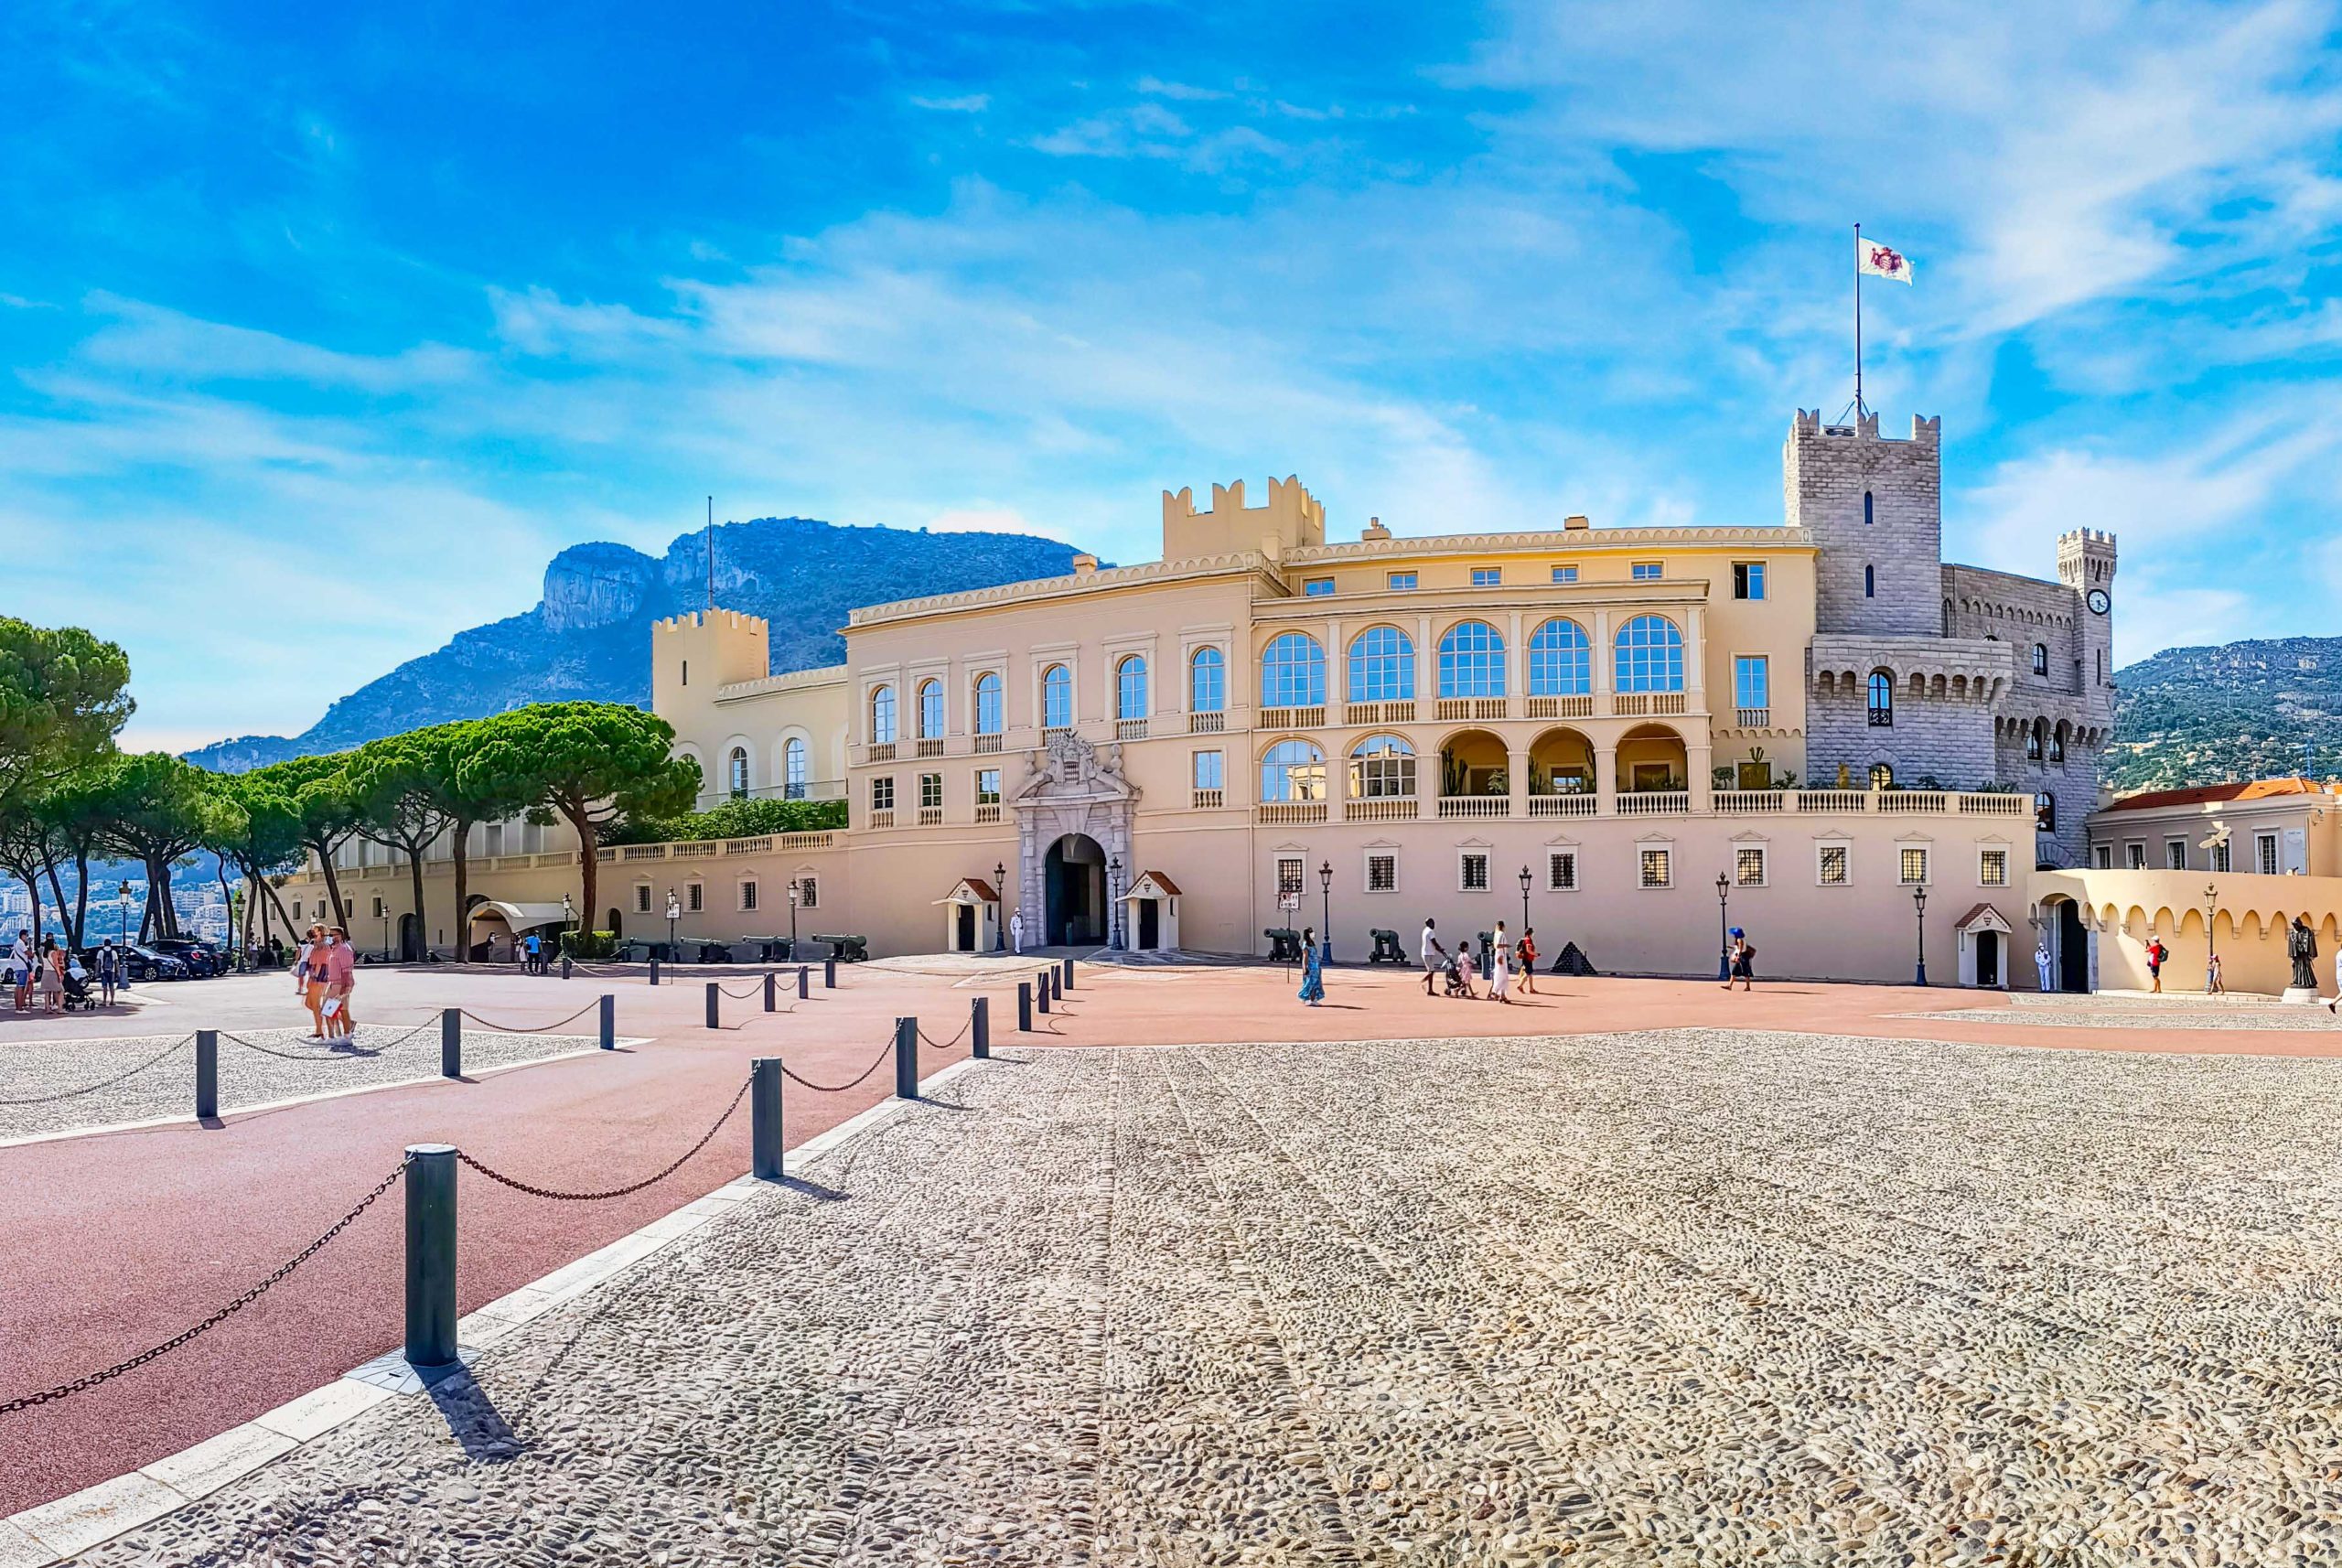 The Prince's Palace of Monaco. Photo: @SNABSA via Twenty20